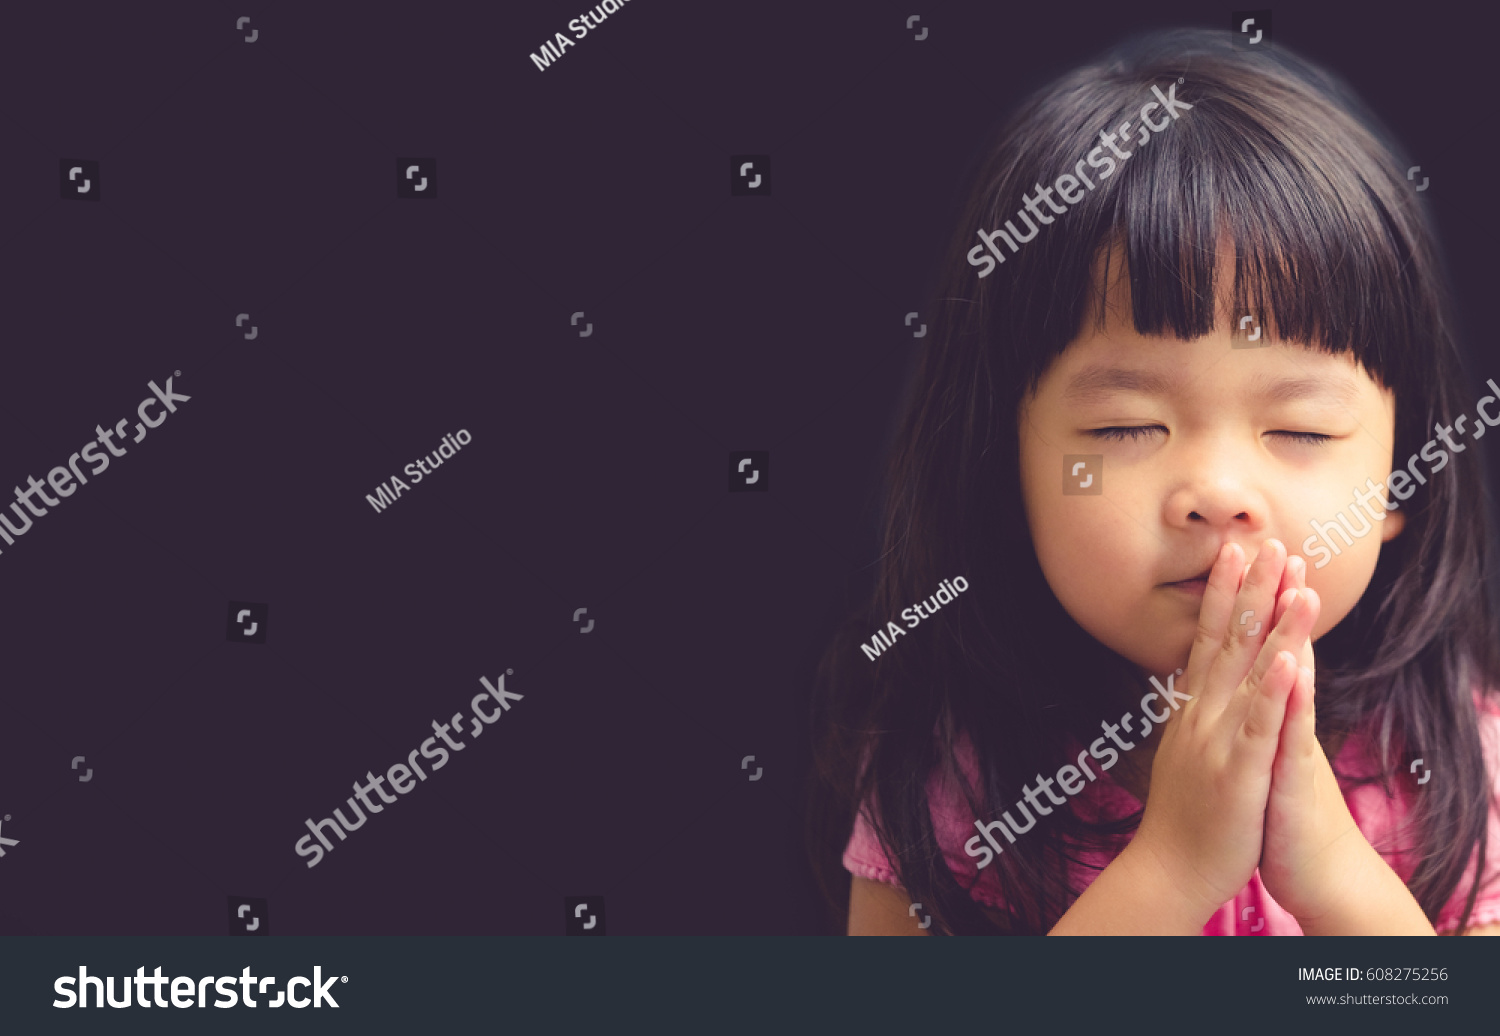 stock-photo-little-girl-praying-in-the-morning-little-asian-girl-hand-praying-hands-folded-in-prayer-concept-608275256.jpg